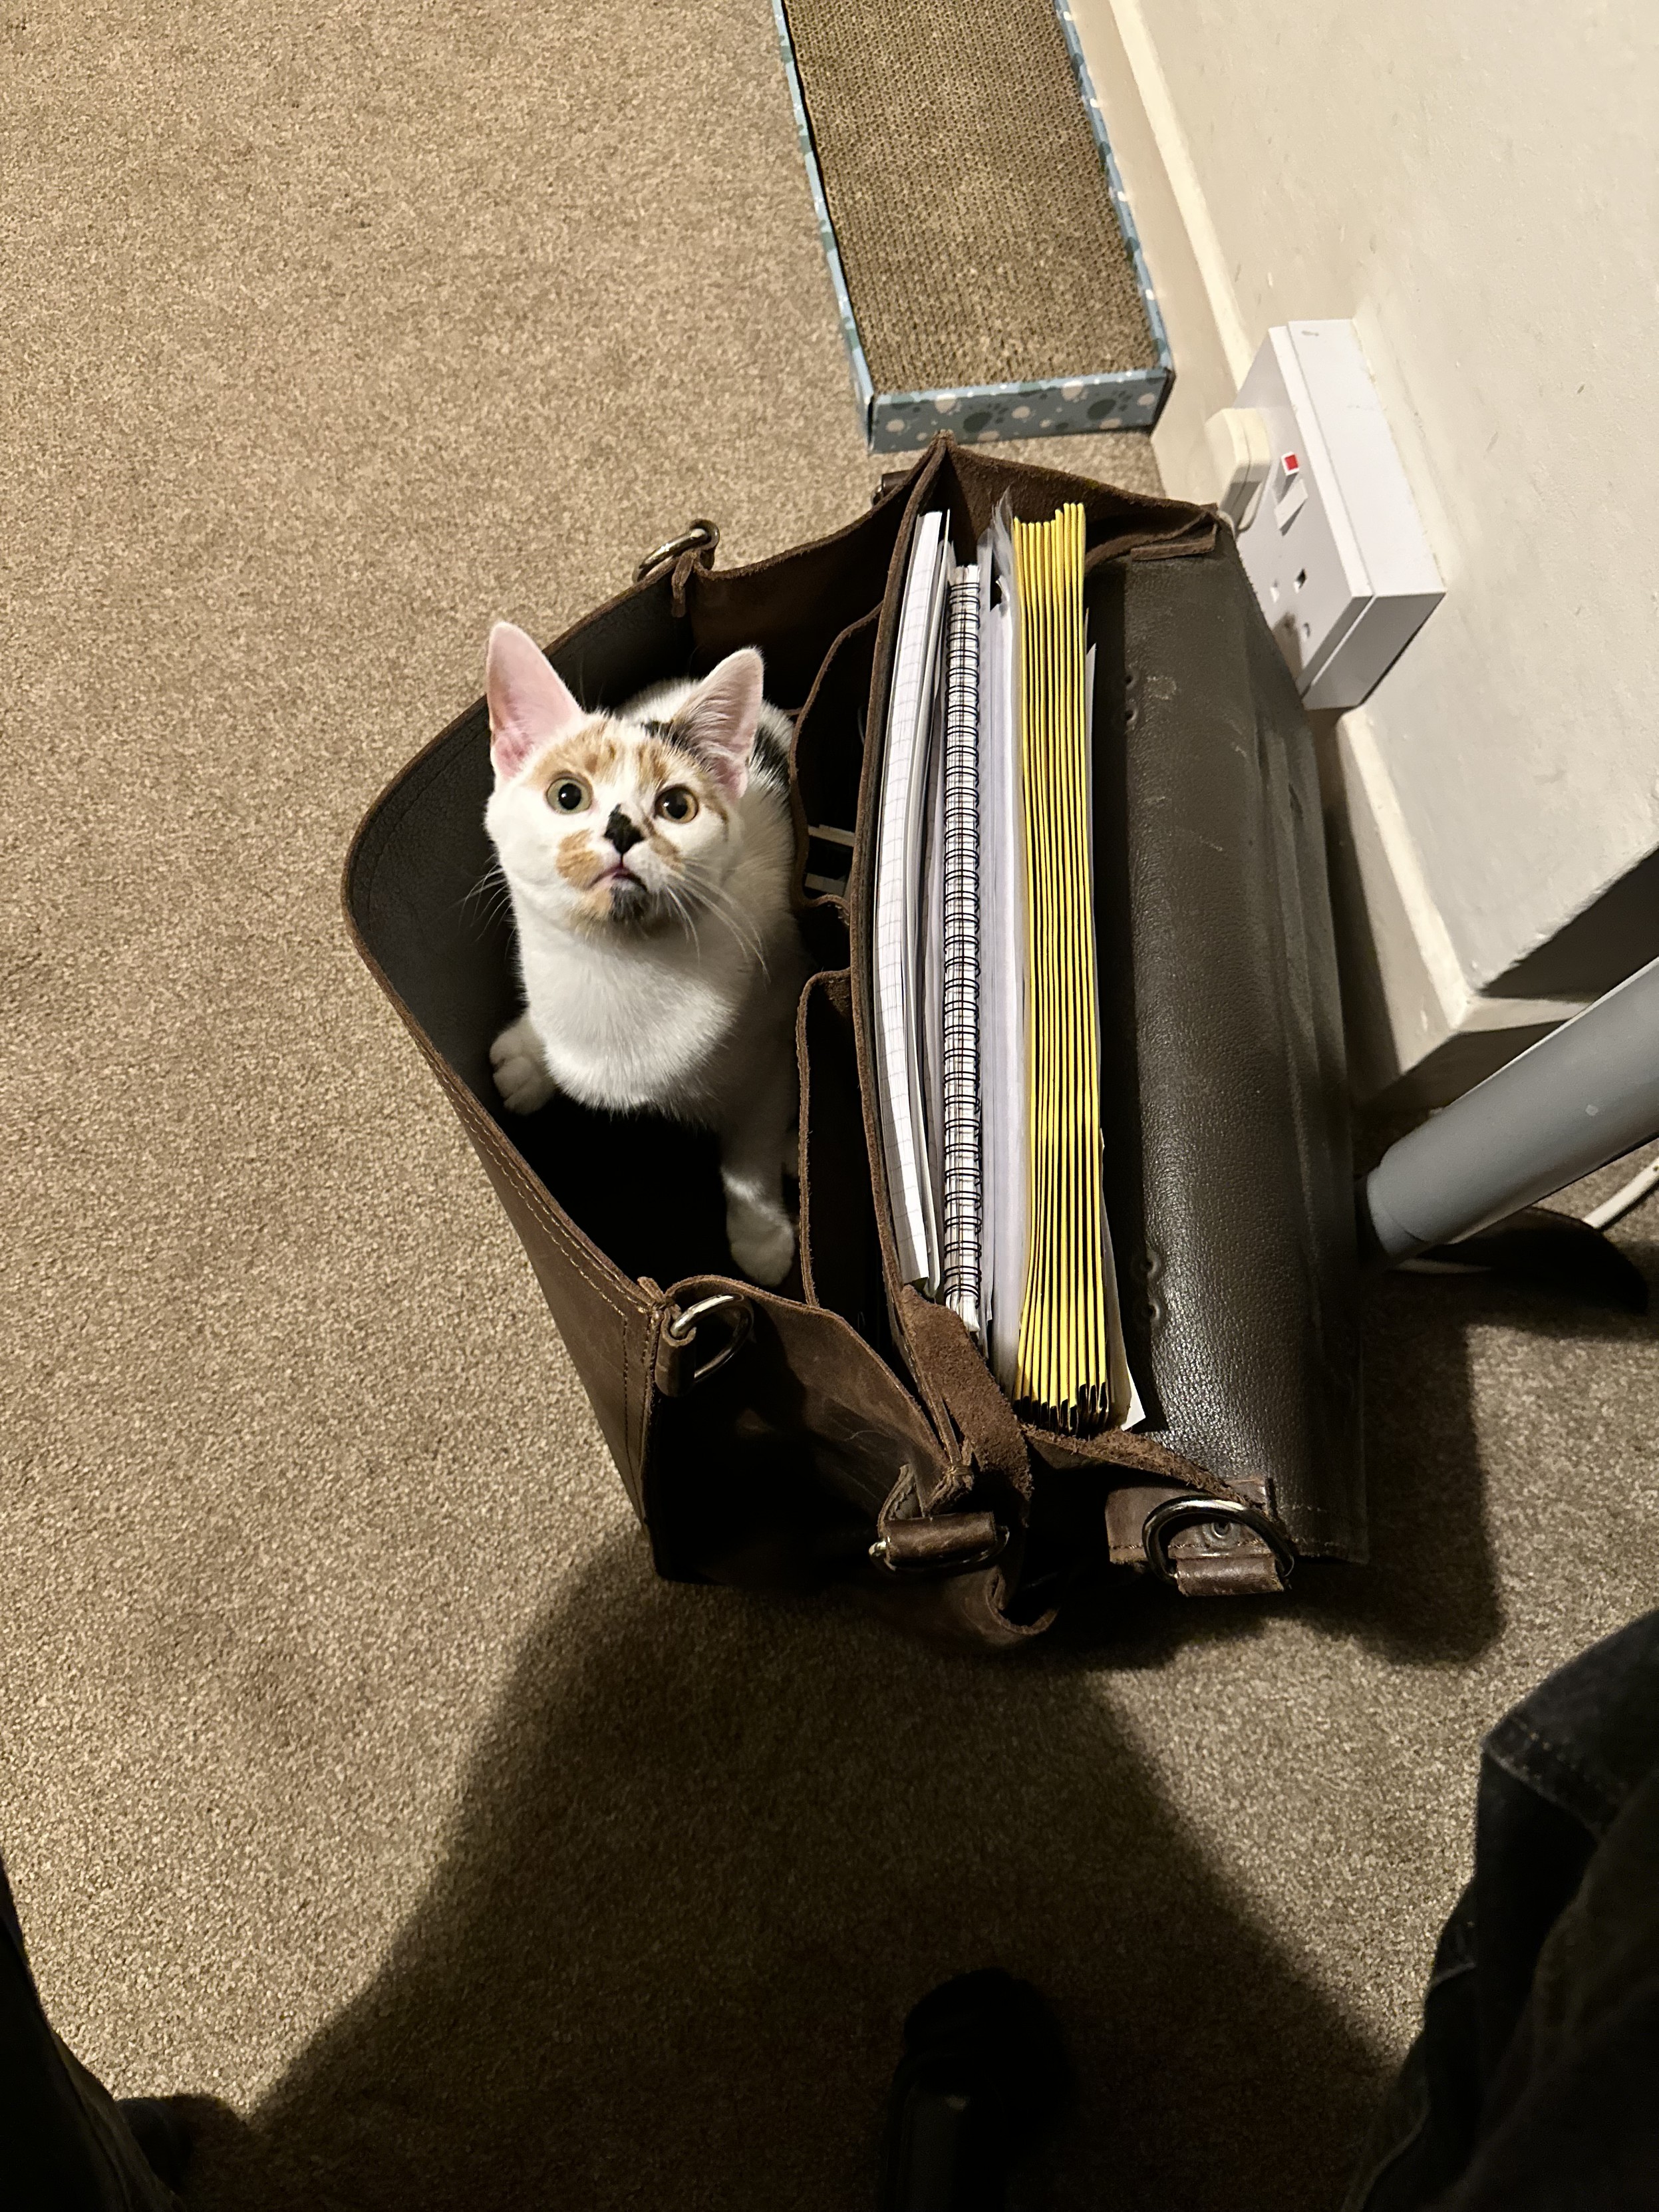 A cat in a briefcase